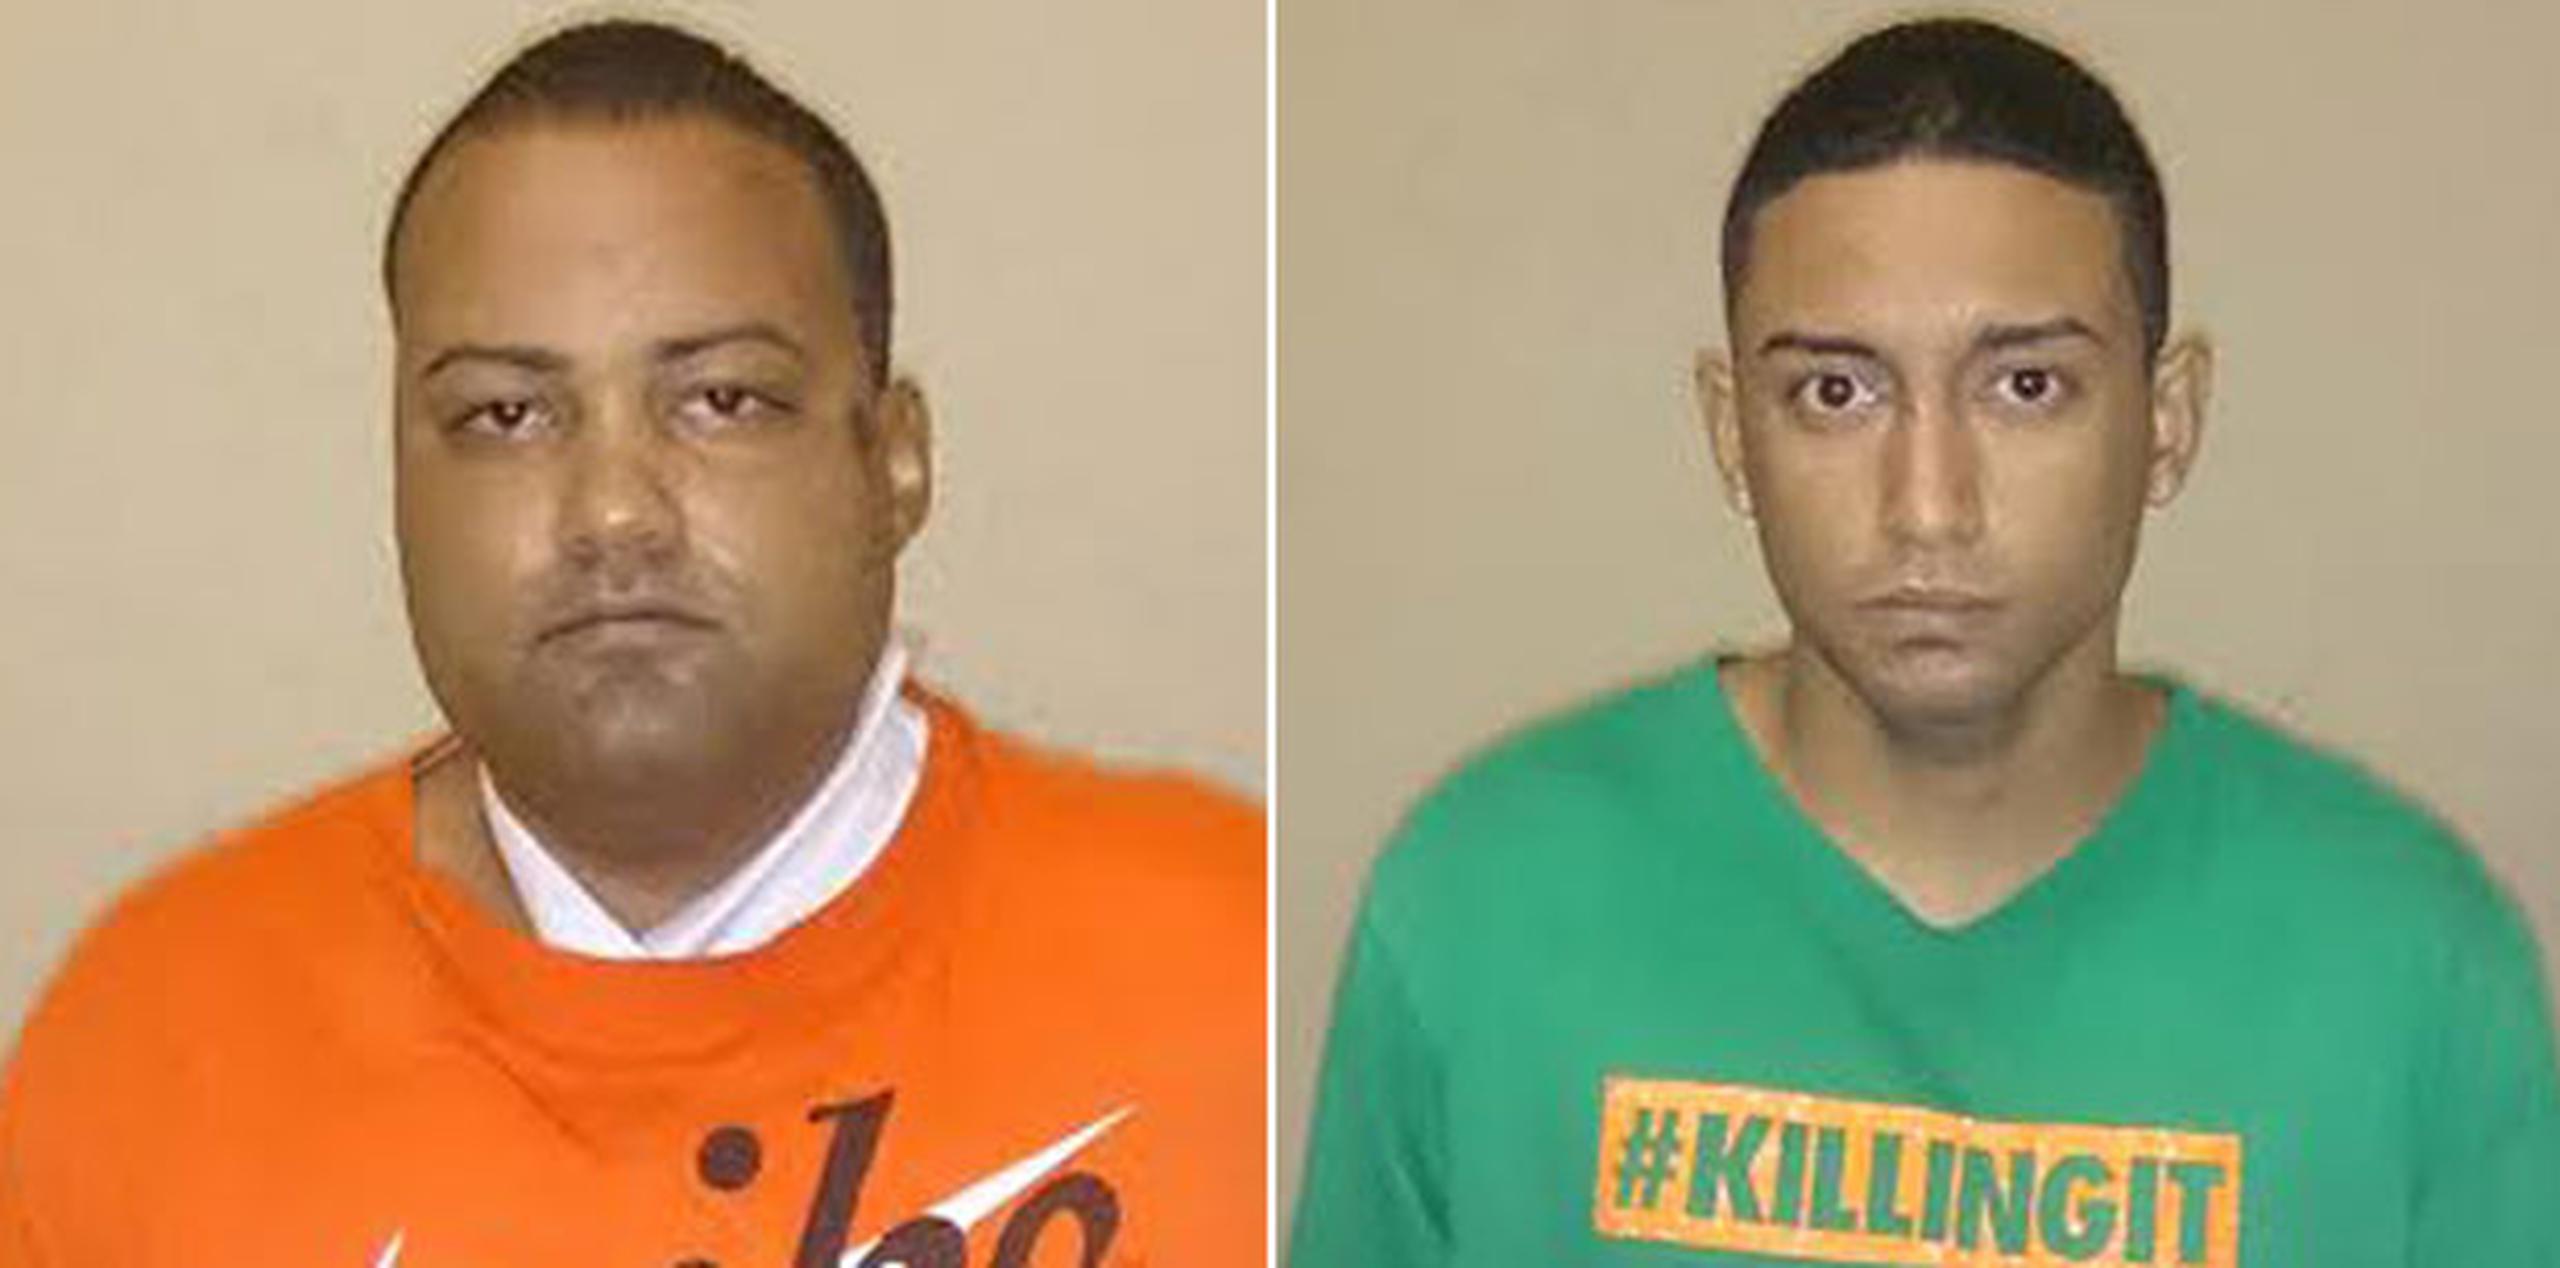 Los hombres fueron identificados en el reporte de novedades como Roberto Arguinzoni, (izquierda), y Luis Figueroa Aponte. (Suministradas)